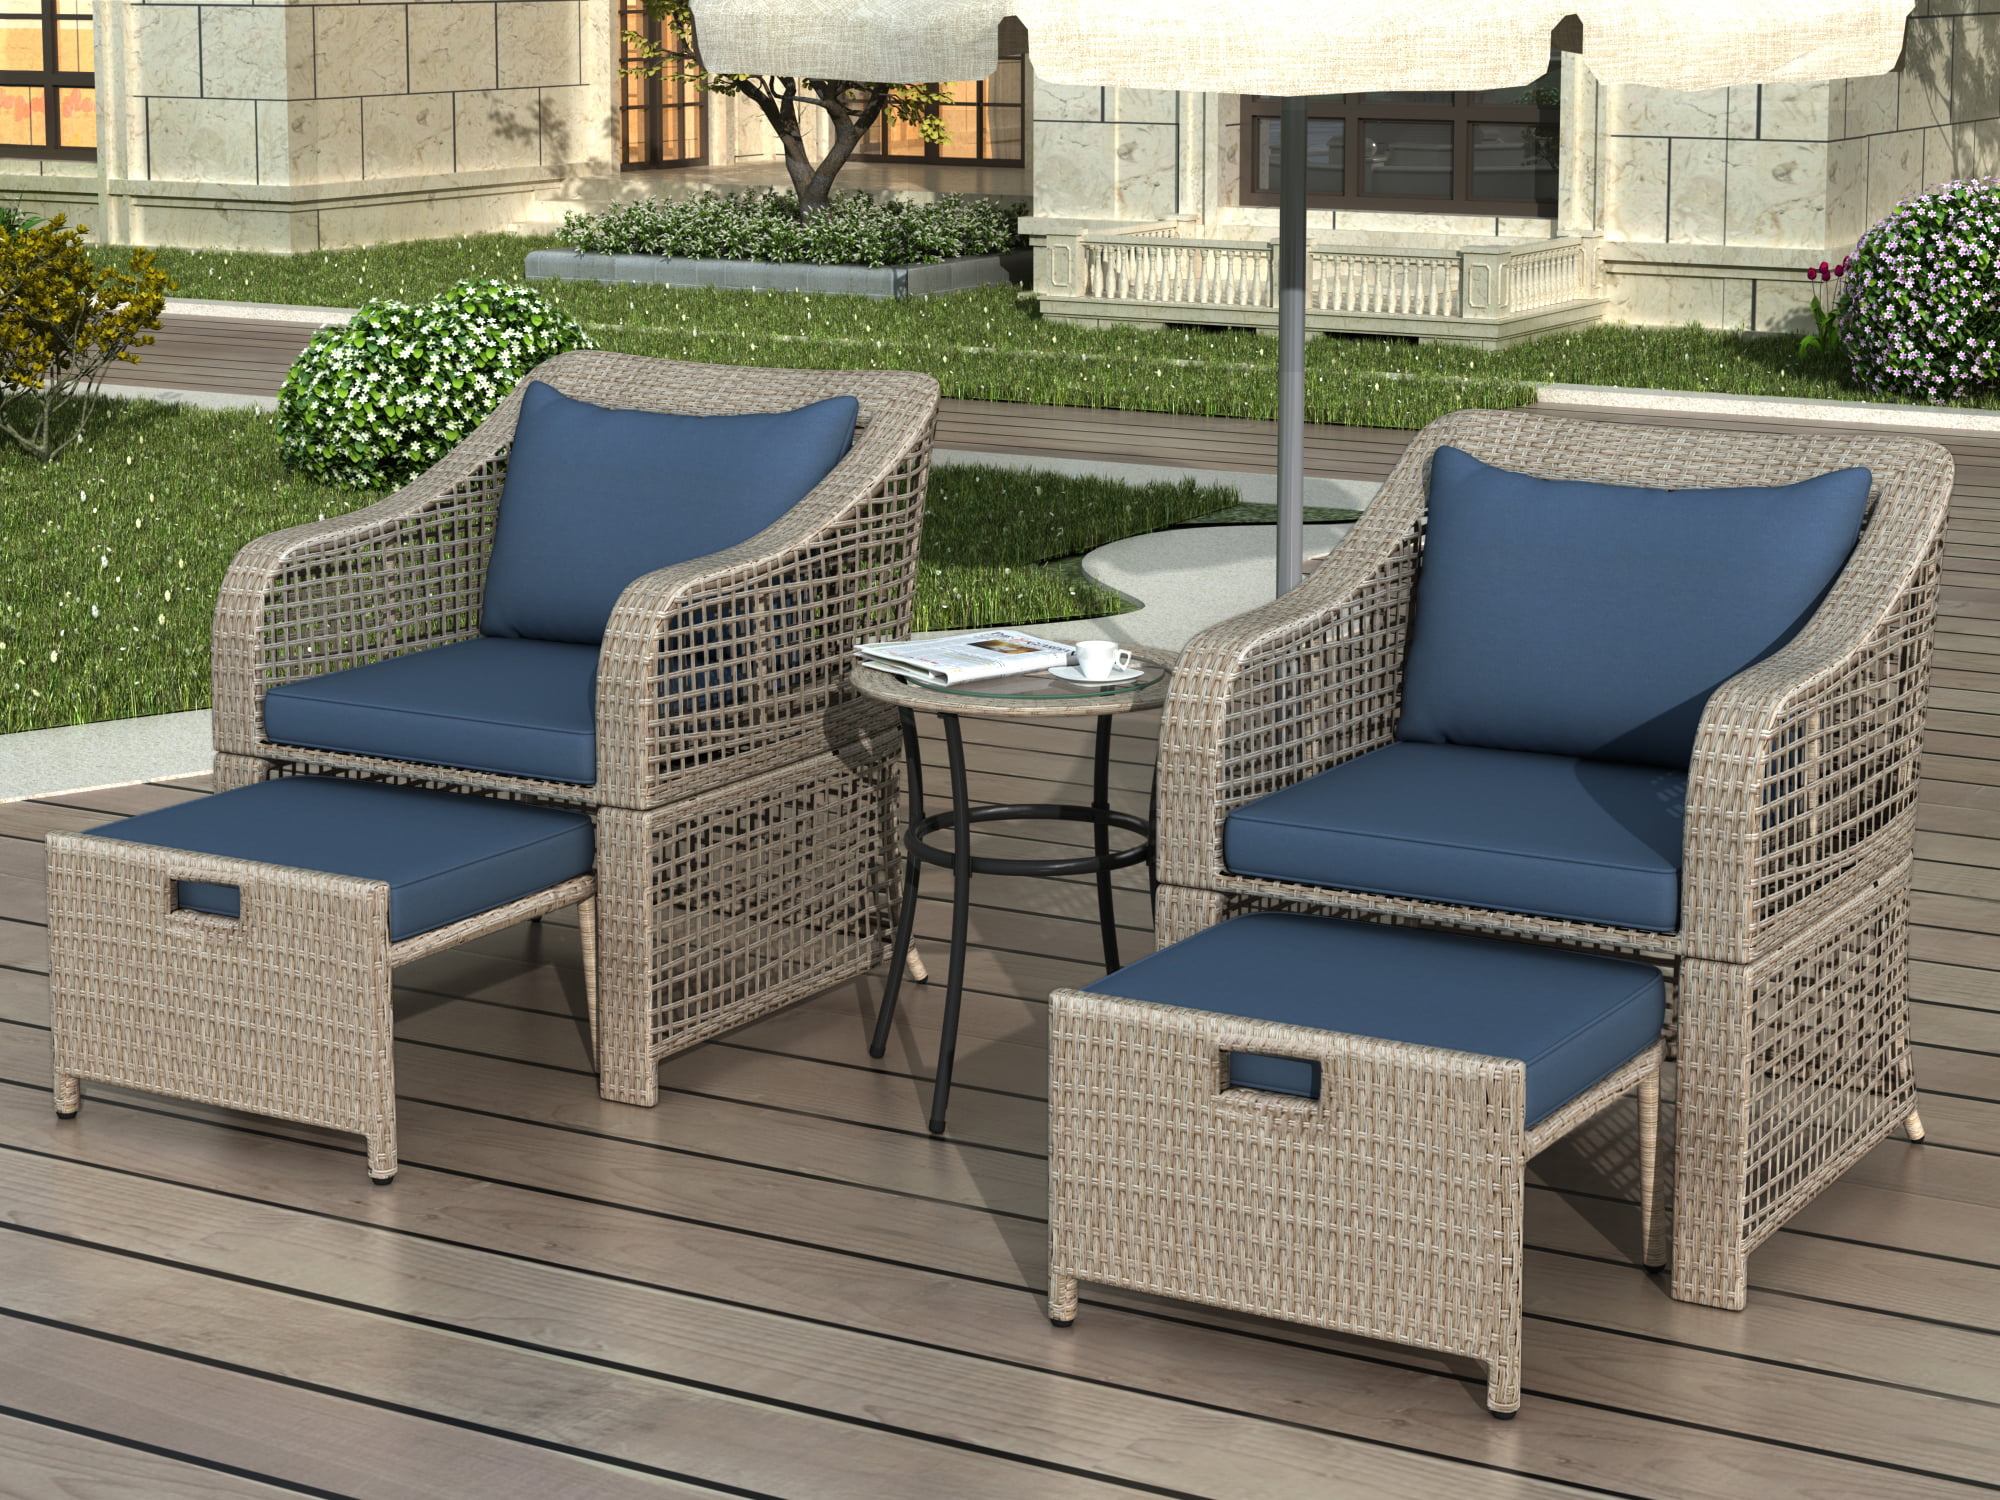 enyopro 5 Piece Wicker Patio Sofa Set, Outdoor All-weather Conversation